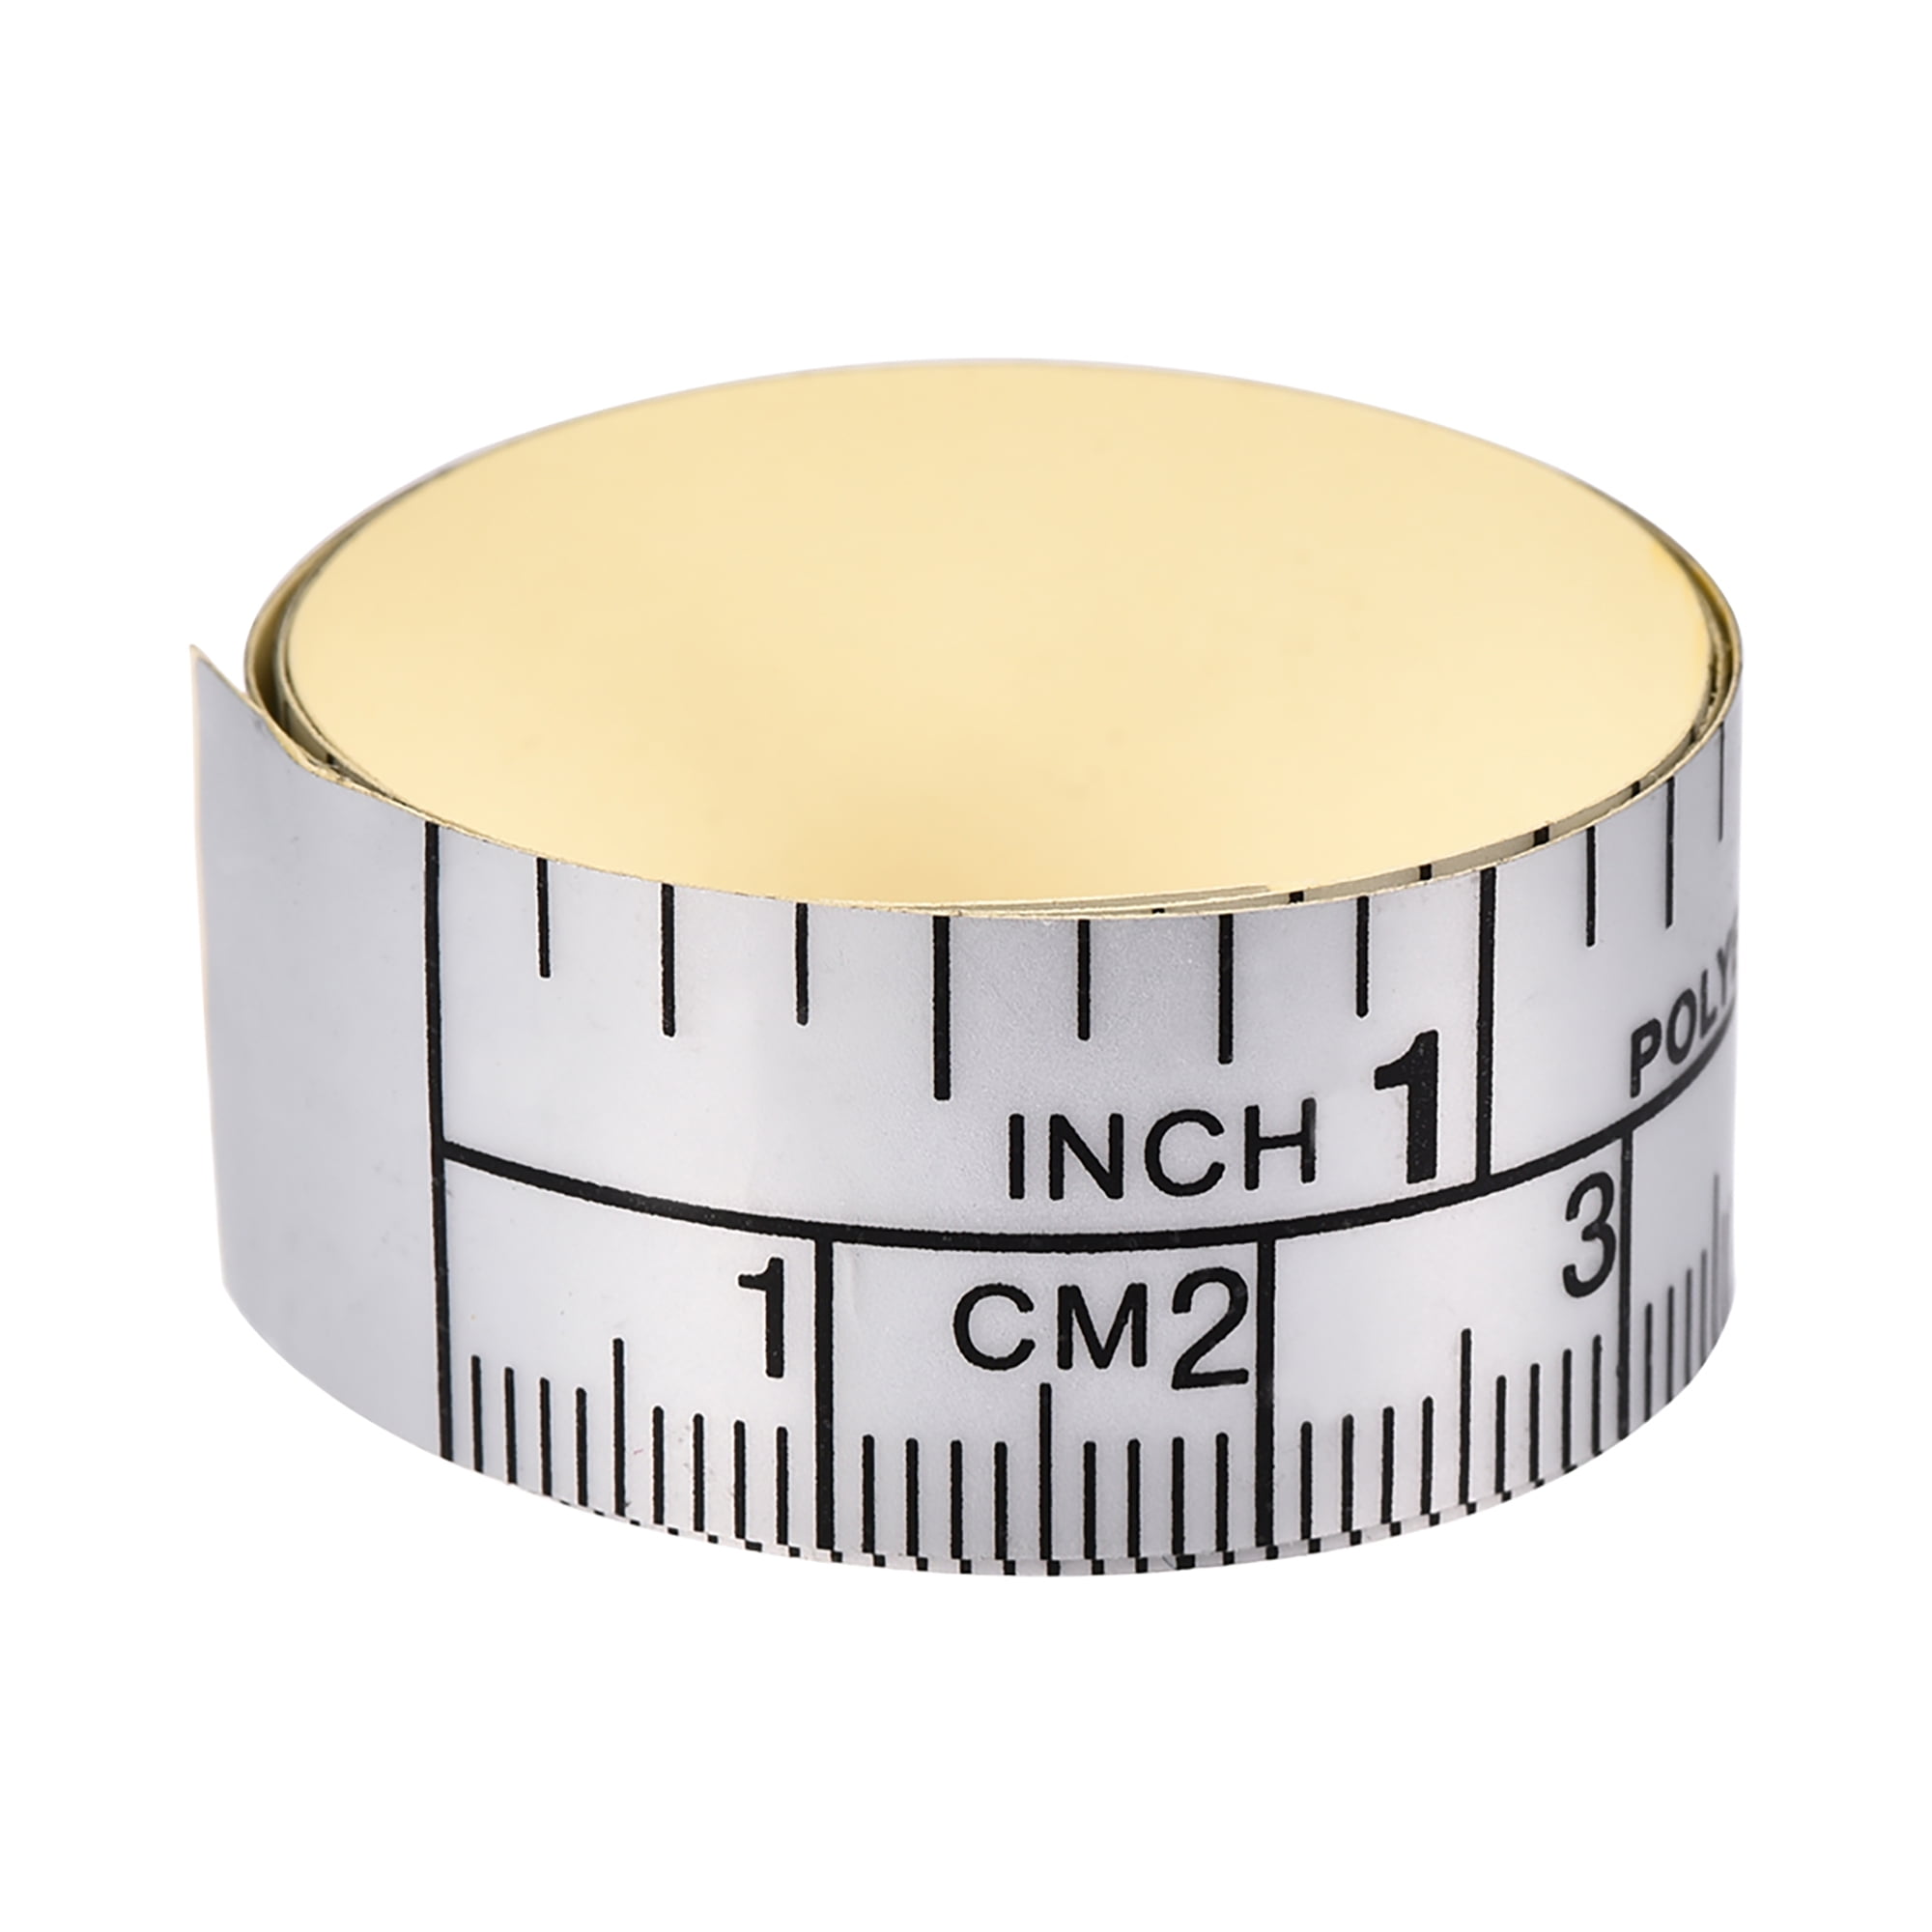 40inch custom logo tape measure 100cm